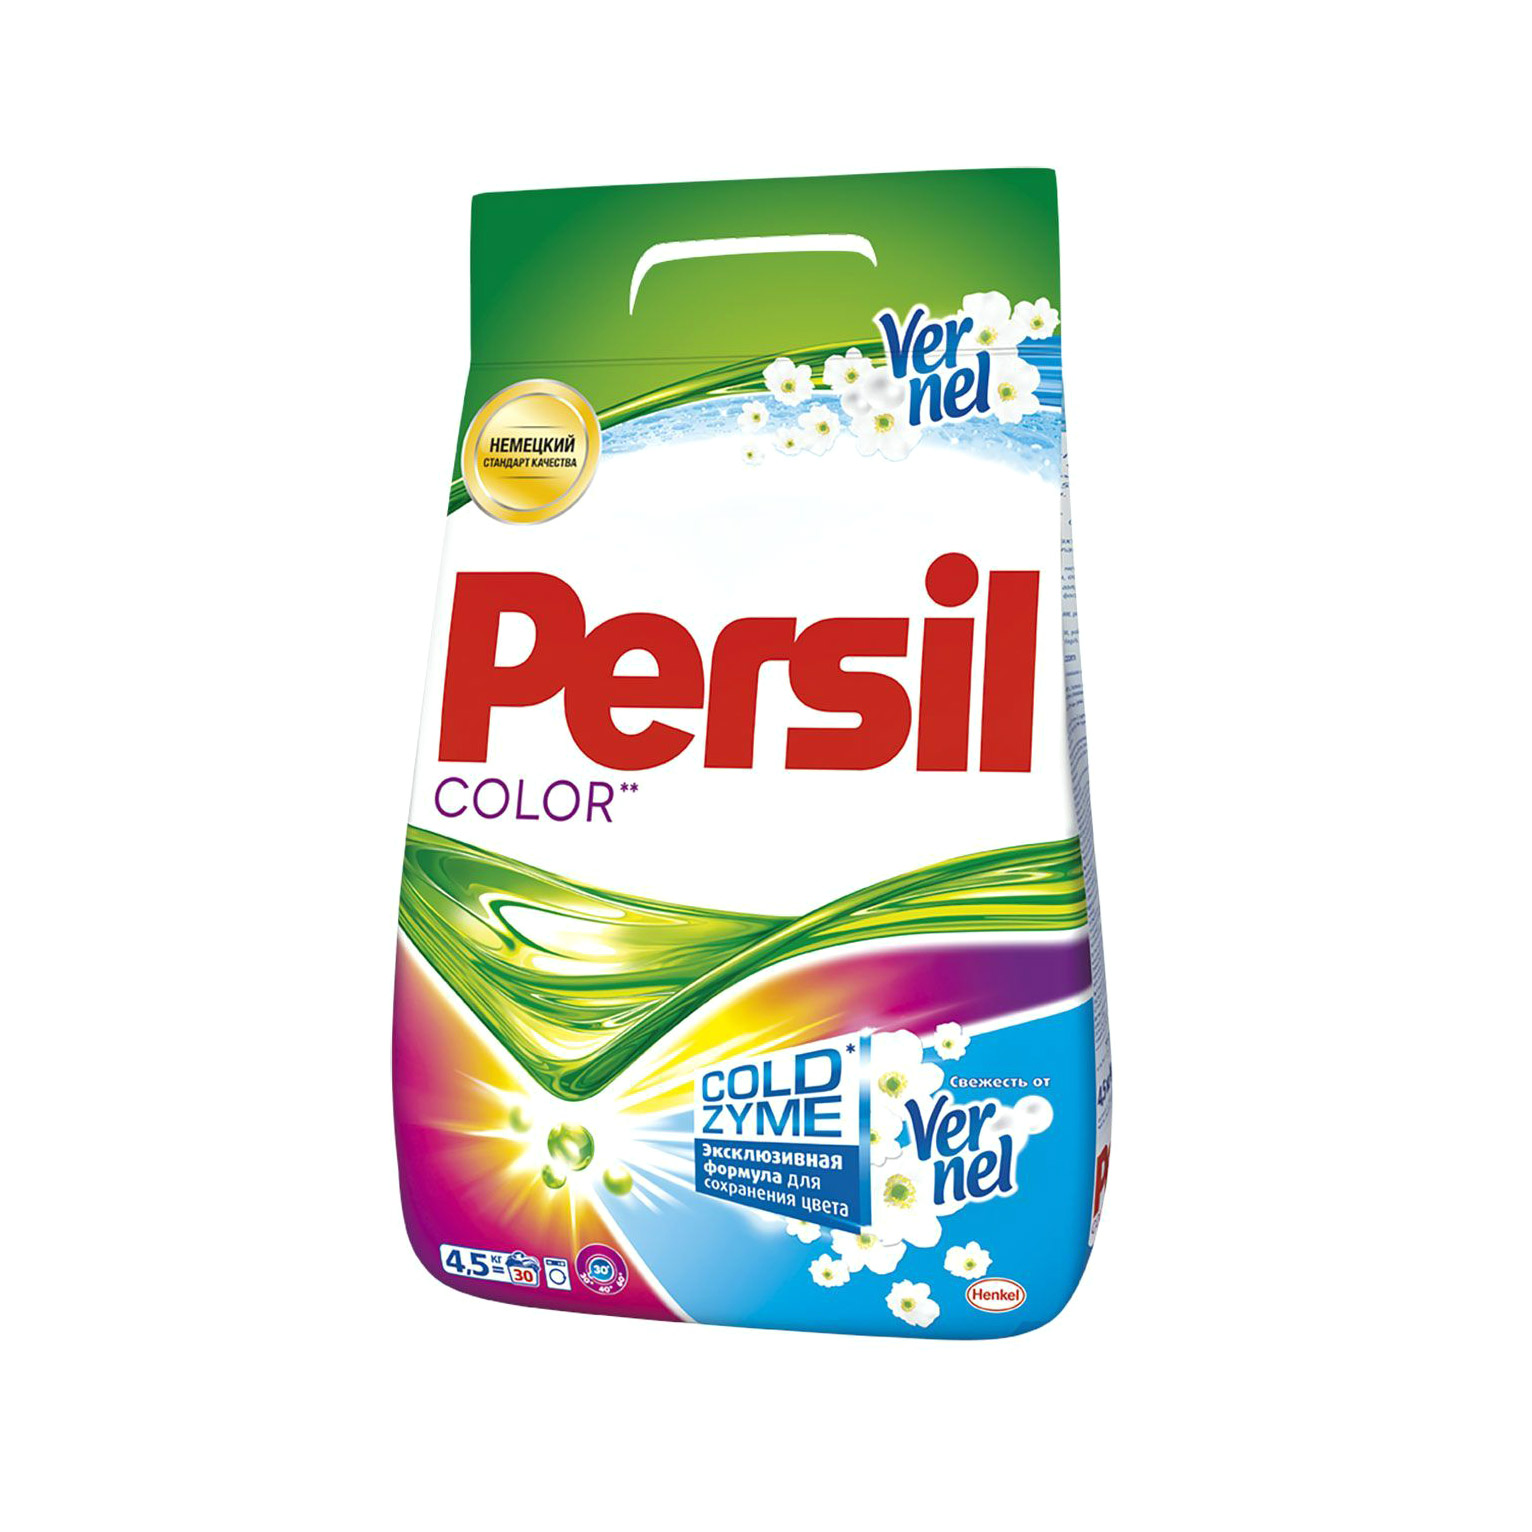 Стиральный порошок Persil Color свежесть Vernel 4.5 кг стиральный порошок persil color 3 кг